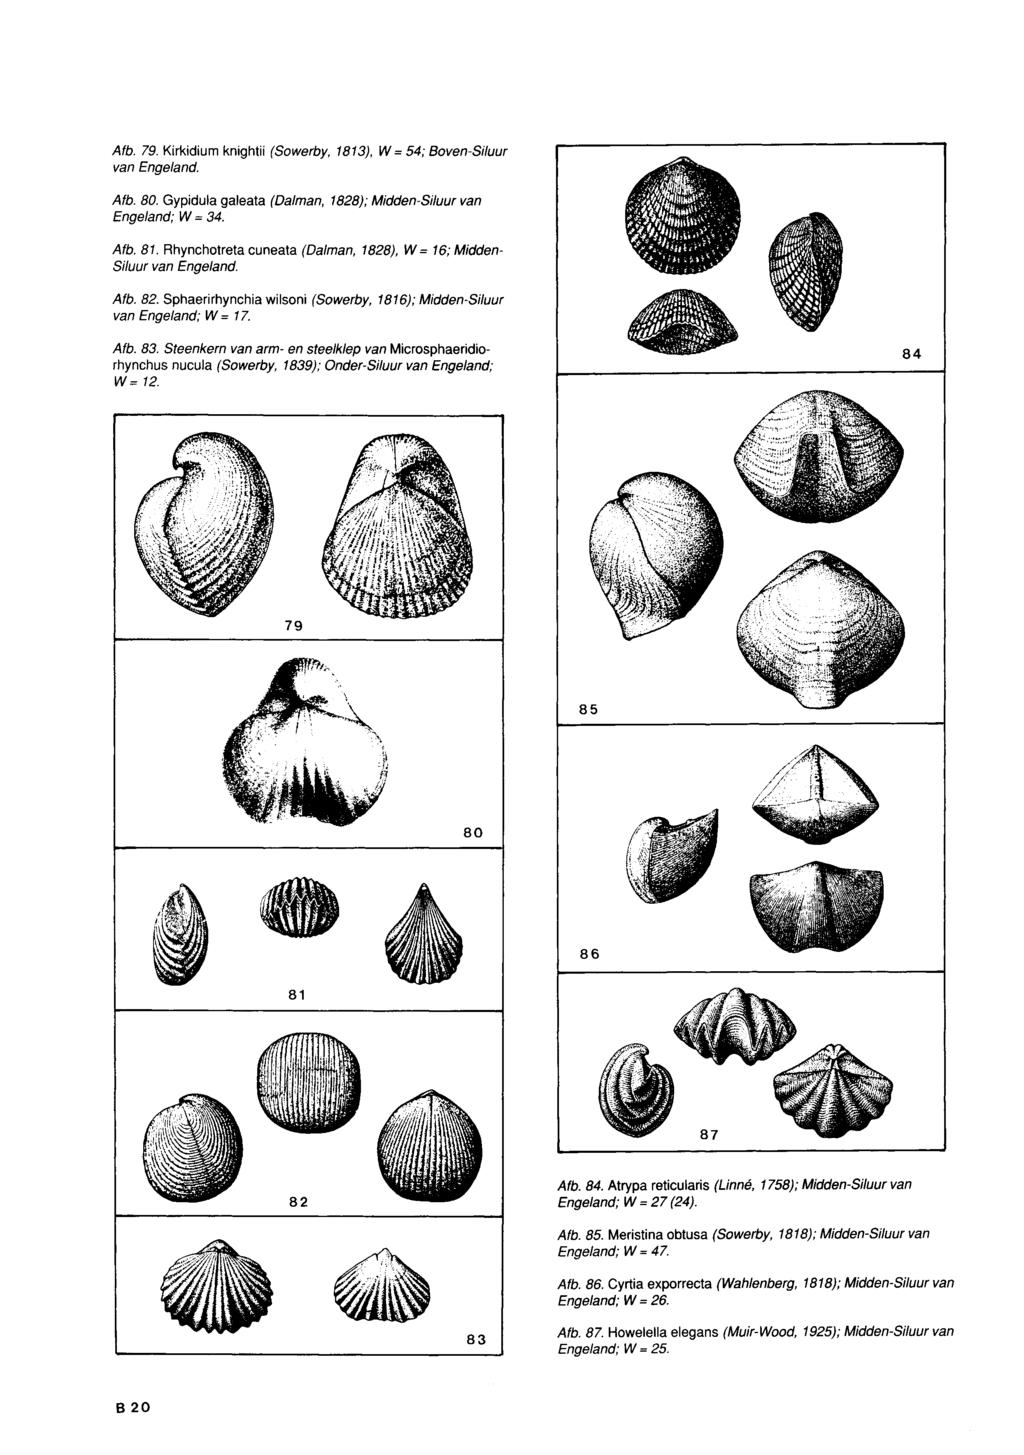 Afb. 79. Kirkidium knightii (Sowerby, 1813), W = 54; Boven-Siluur van Afb. 80. Gypidula galeata (Dalman, 1828); Midden-Siluur van Engeland; W=34. Afb. 81.